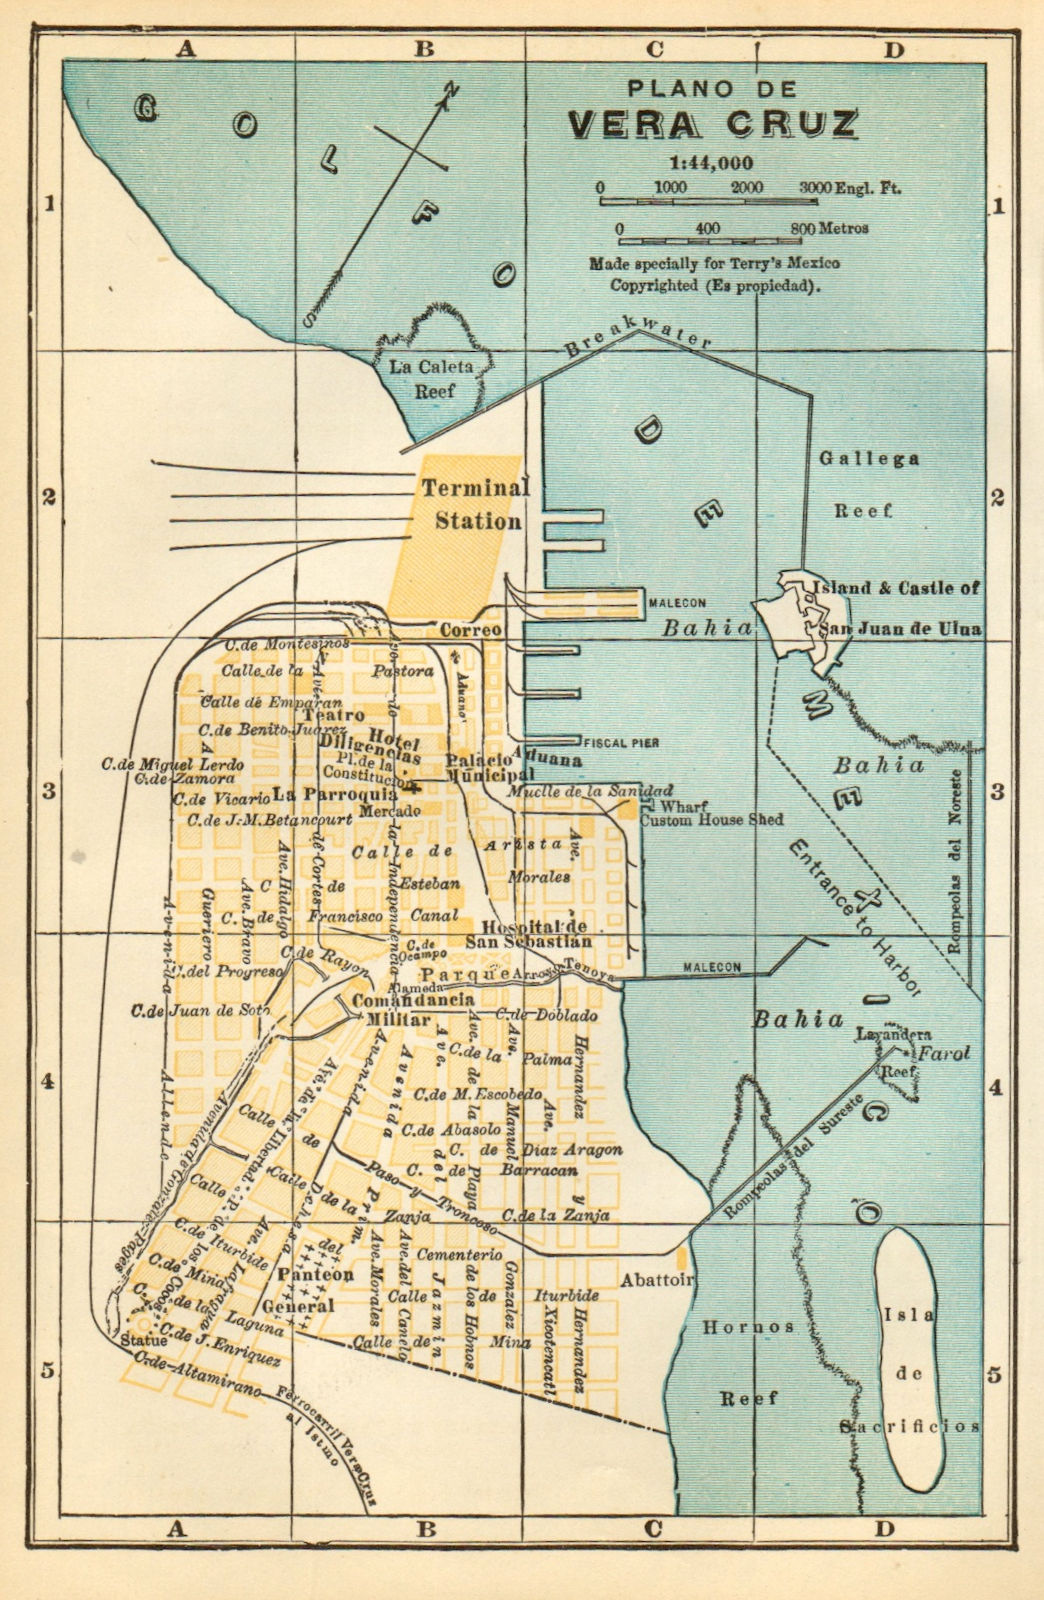 Associate Product Plano de VERACRUZ, Mexico. Mapa de la ciudad. City/town plan 1935 old